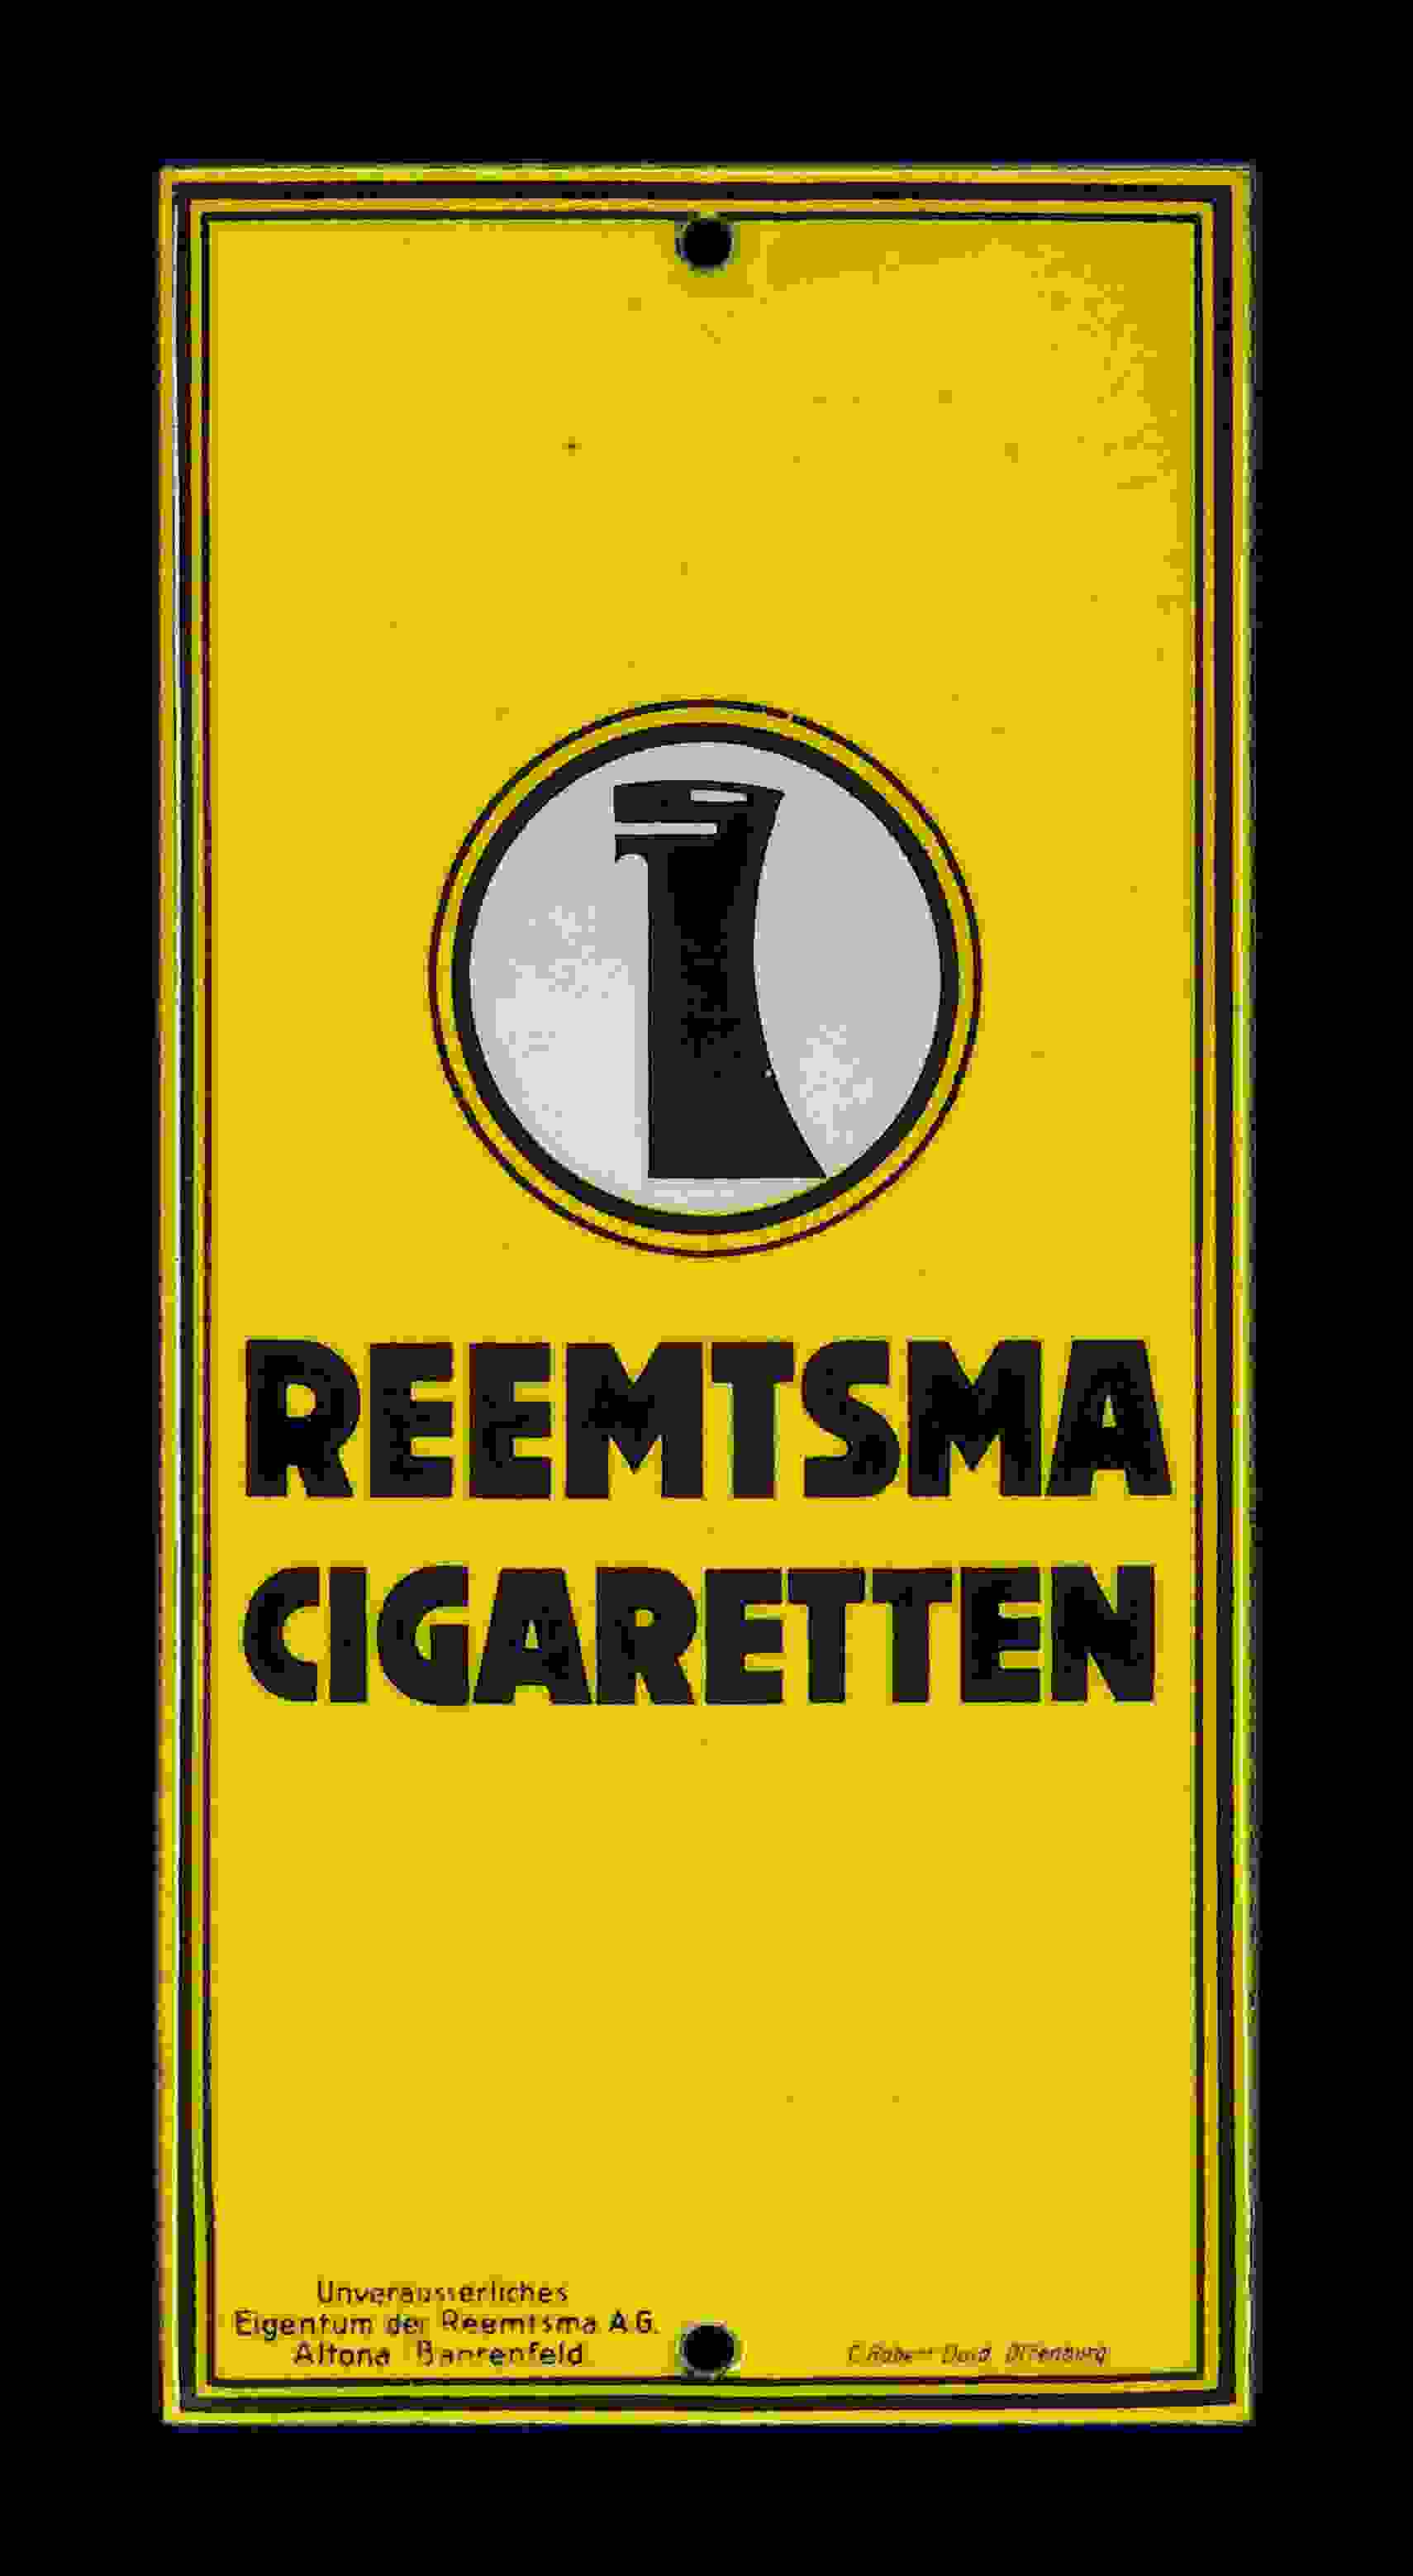 Reemtsma Cigaretten 